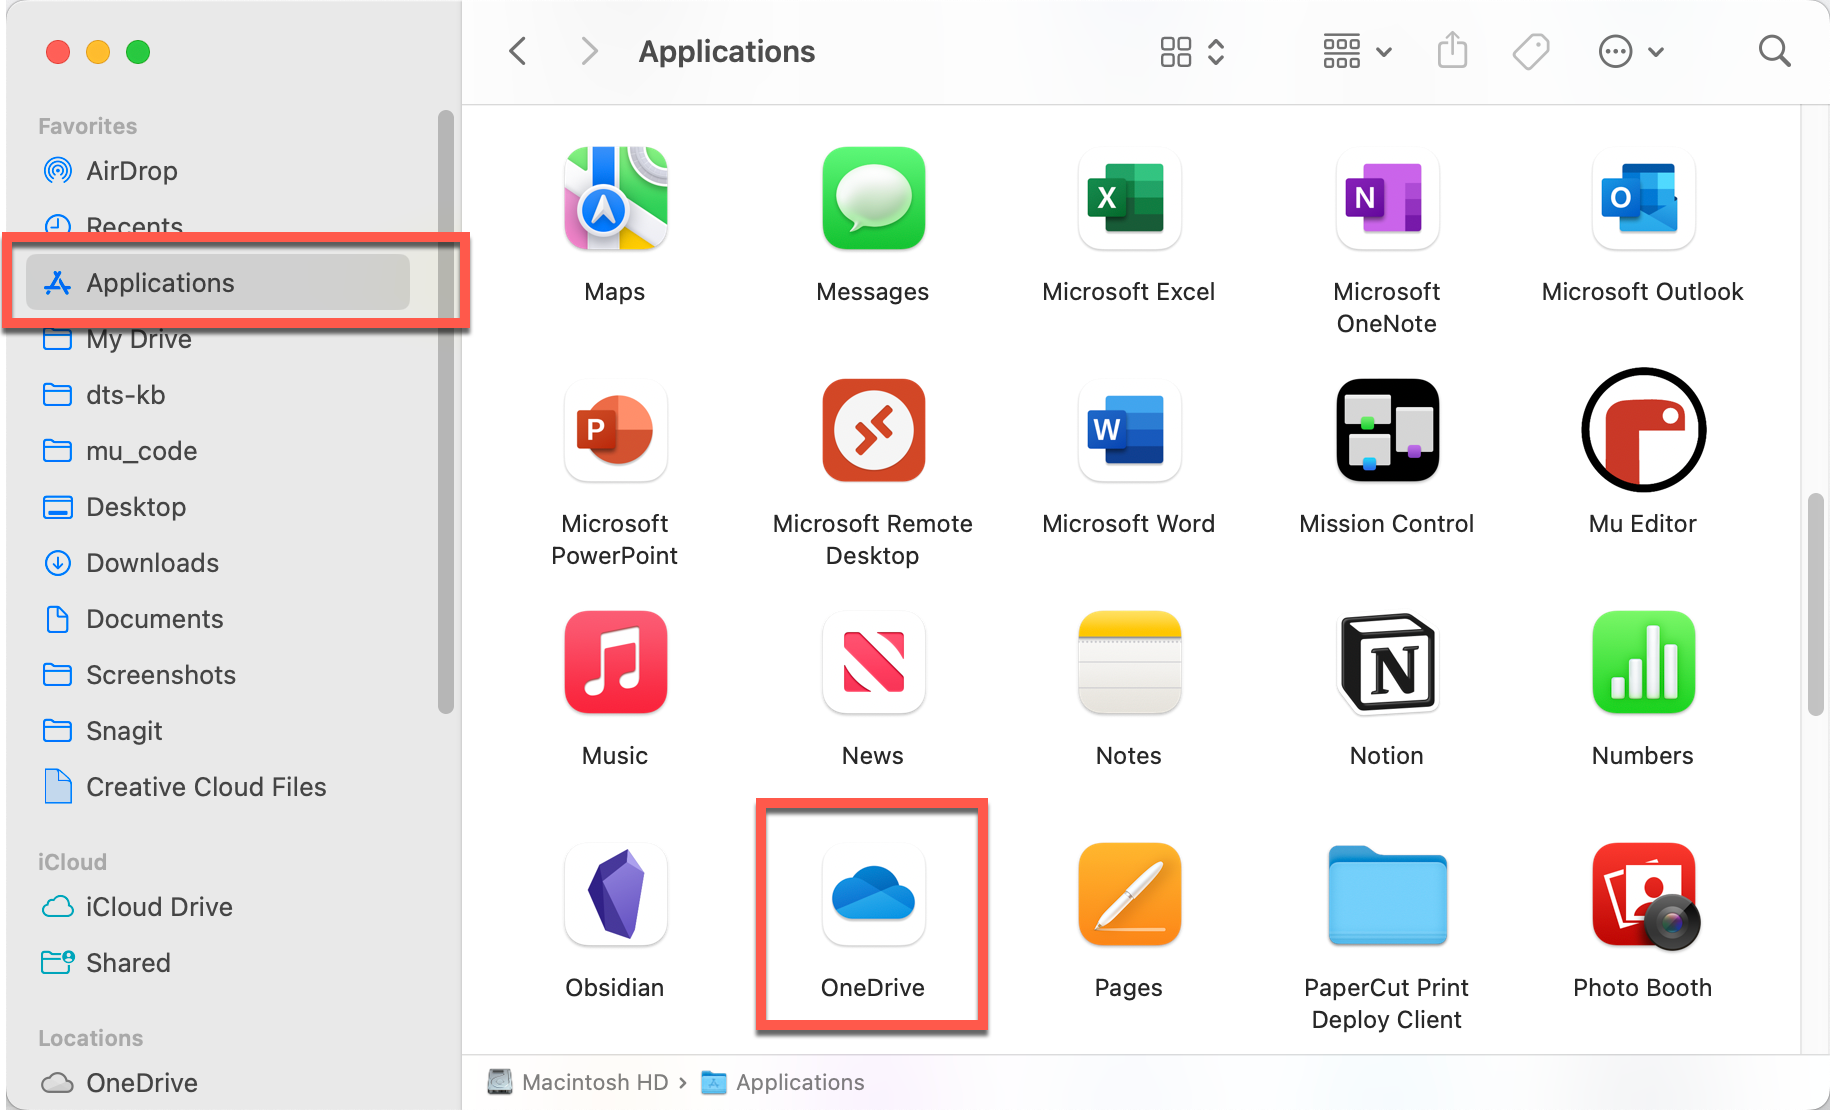 OneDrive in Applications folder